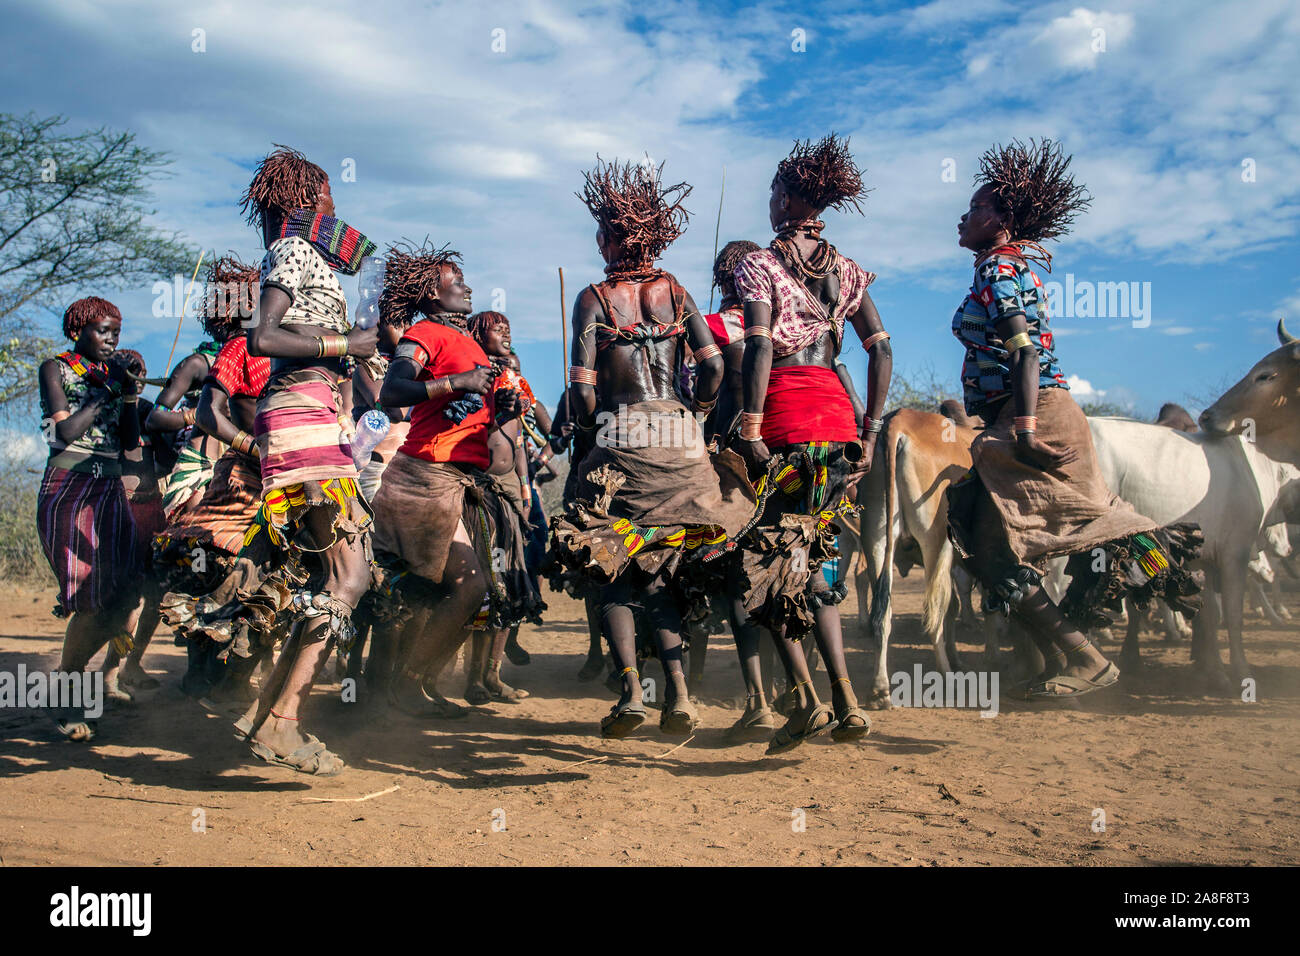 Les femmes de la tribu Hamar danser devant l'bull cérémonie saut près de Turmi Ethiopie Banque D'Images